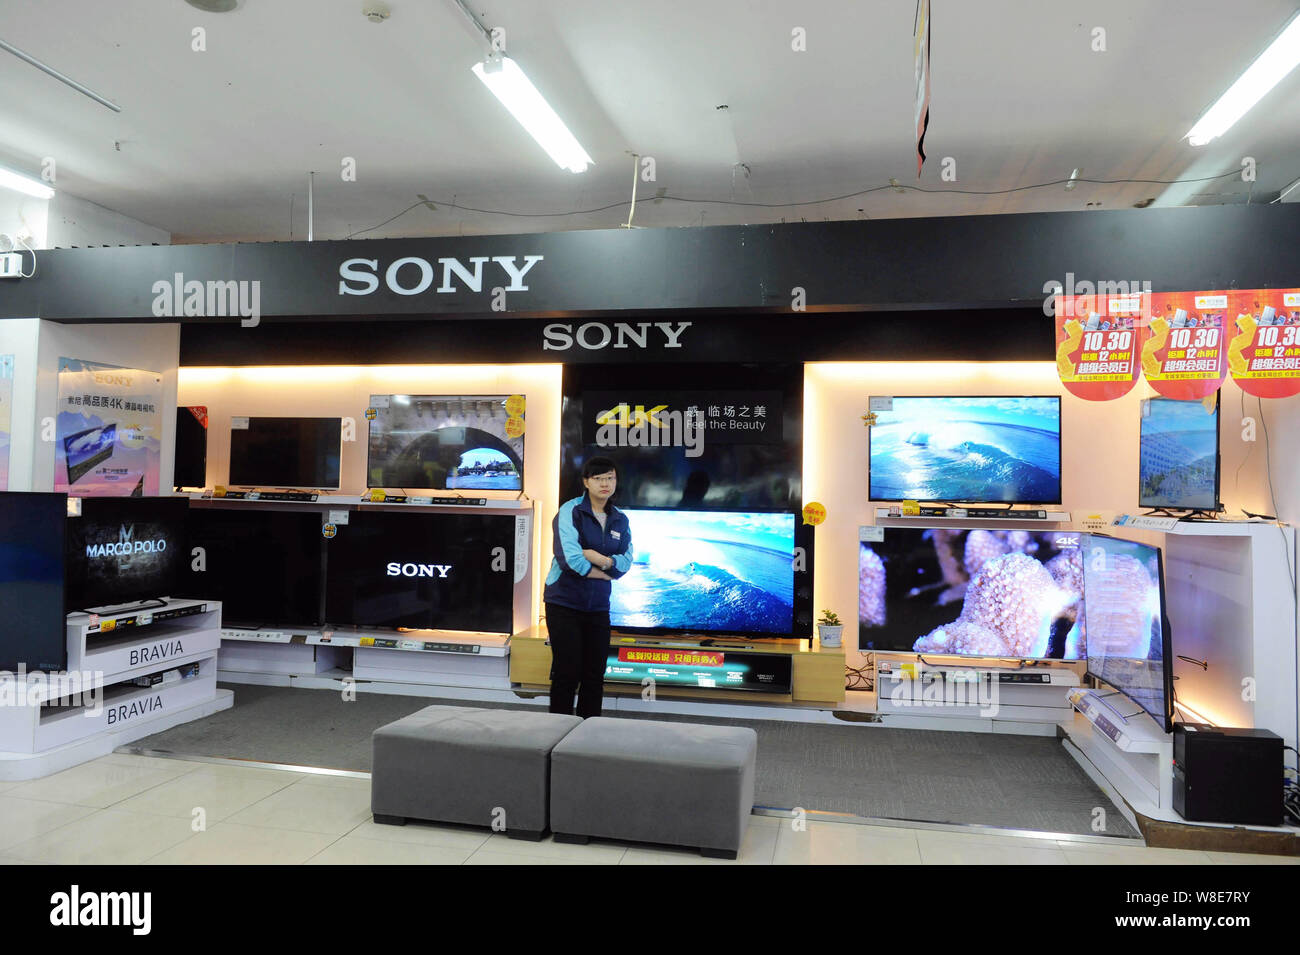 FILE--un empleado chino es visto en el mostrador de la televisión Sony en  una tienda de electrodomésticos en la ciudad de Qingdao, Provincia de  Shandong, en el este de China, 30 OC